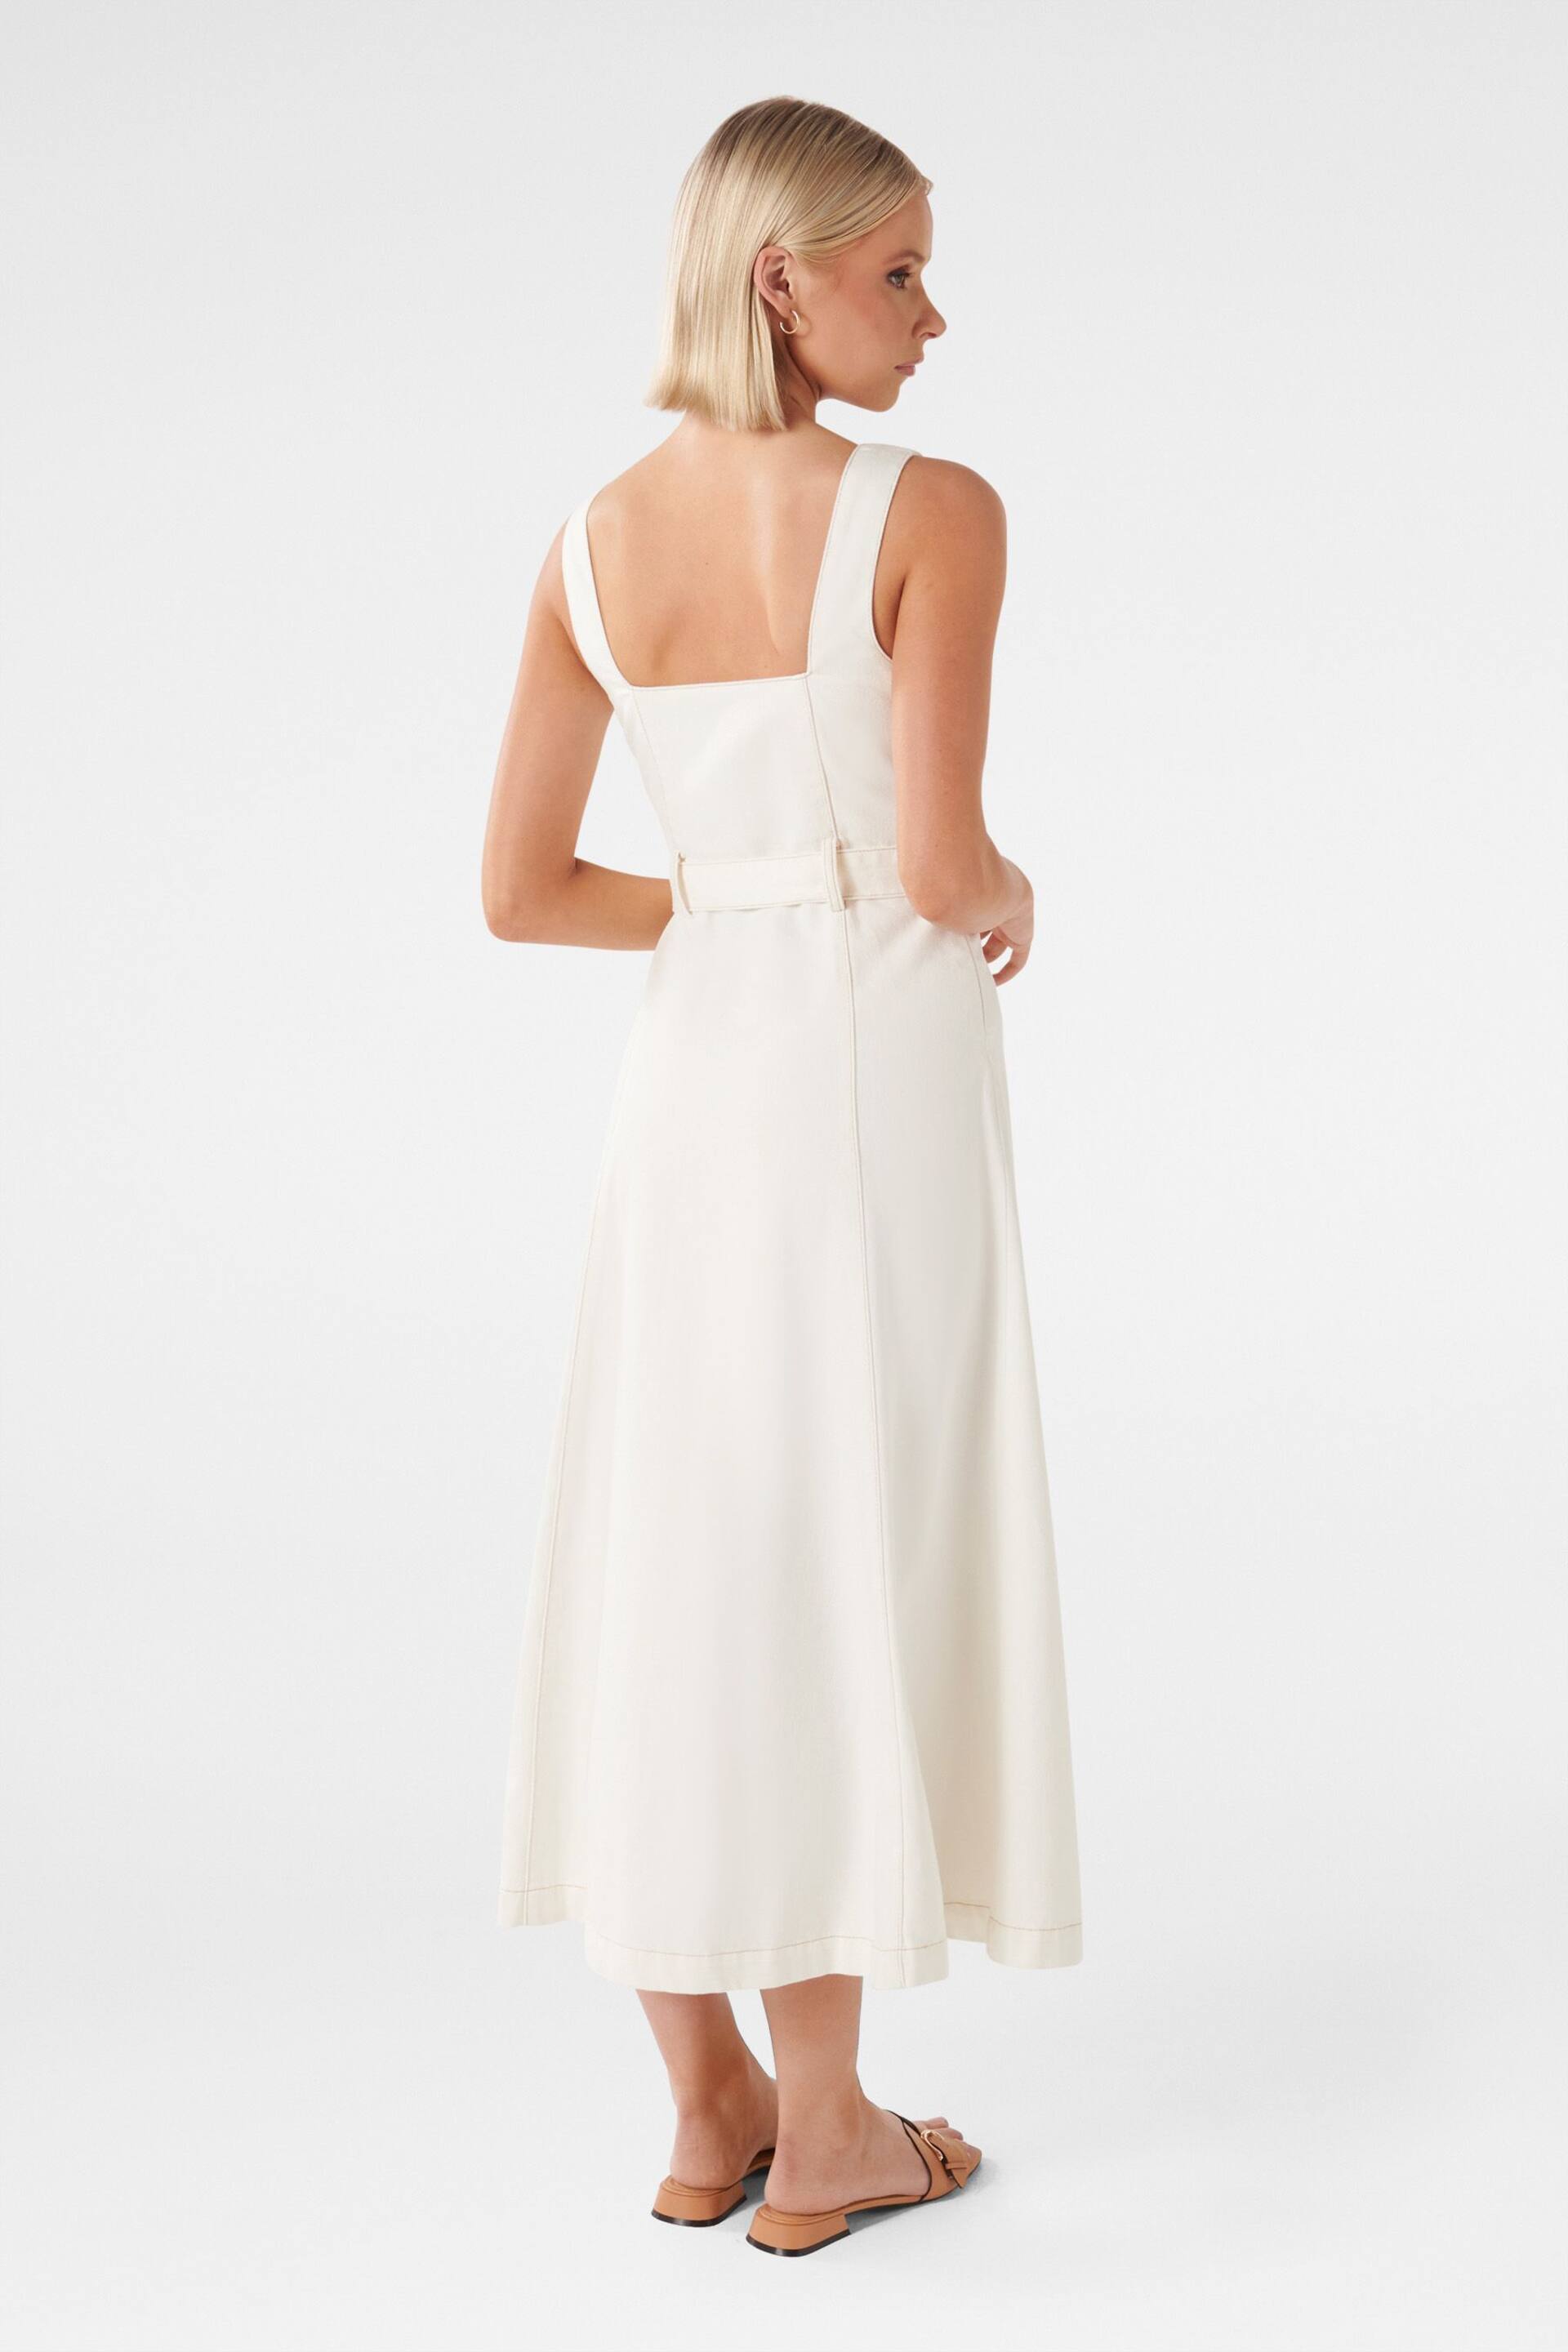 Forever New White Maja Denim Dress - Image 4 of 4